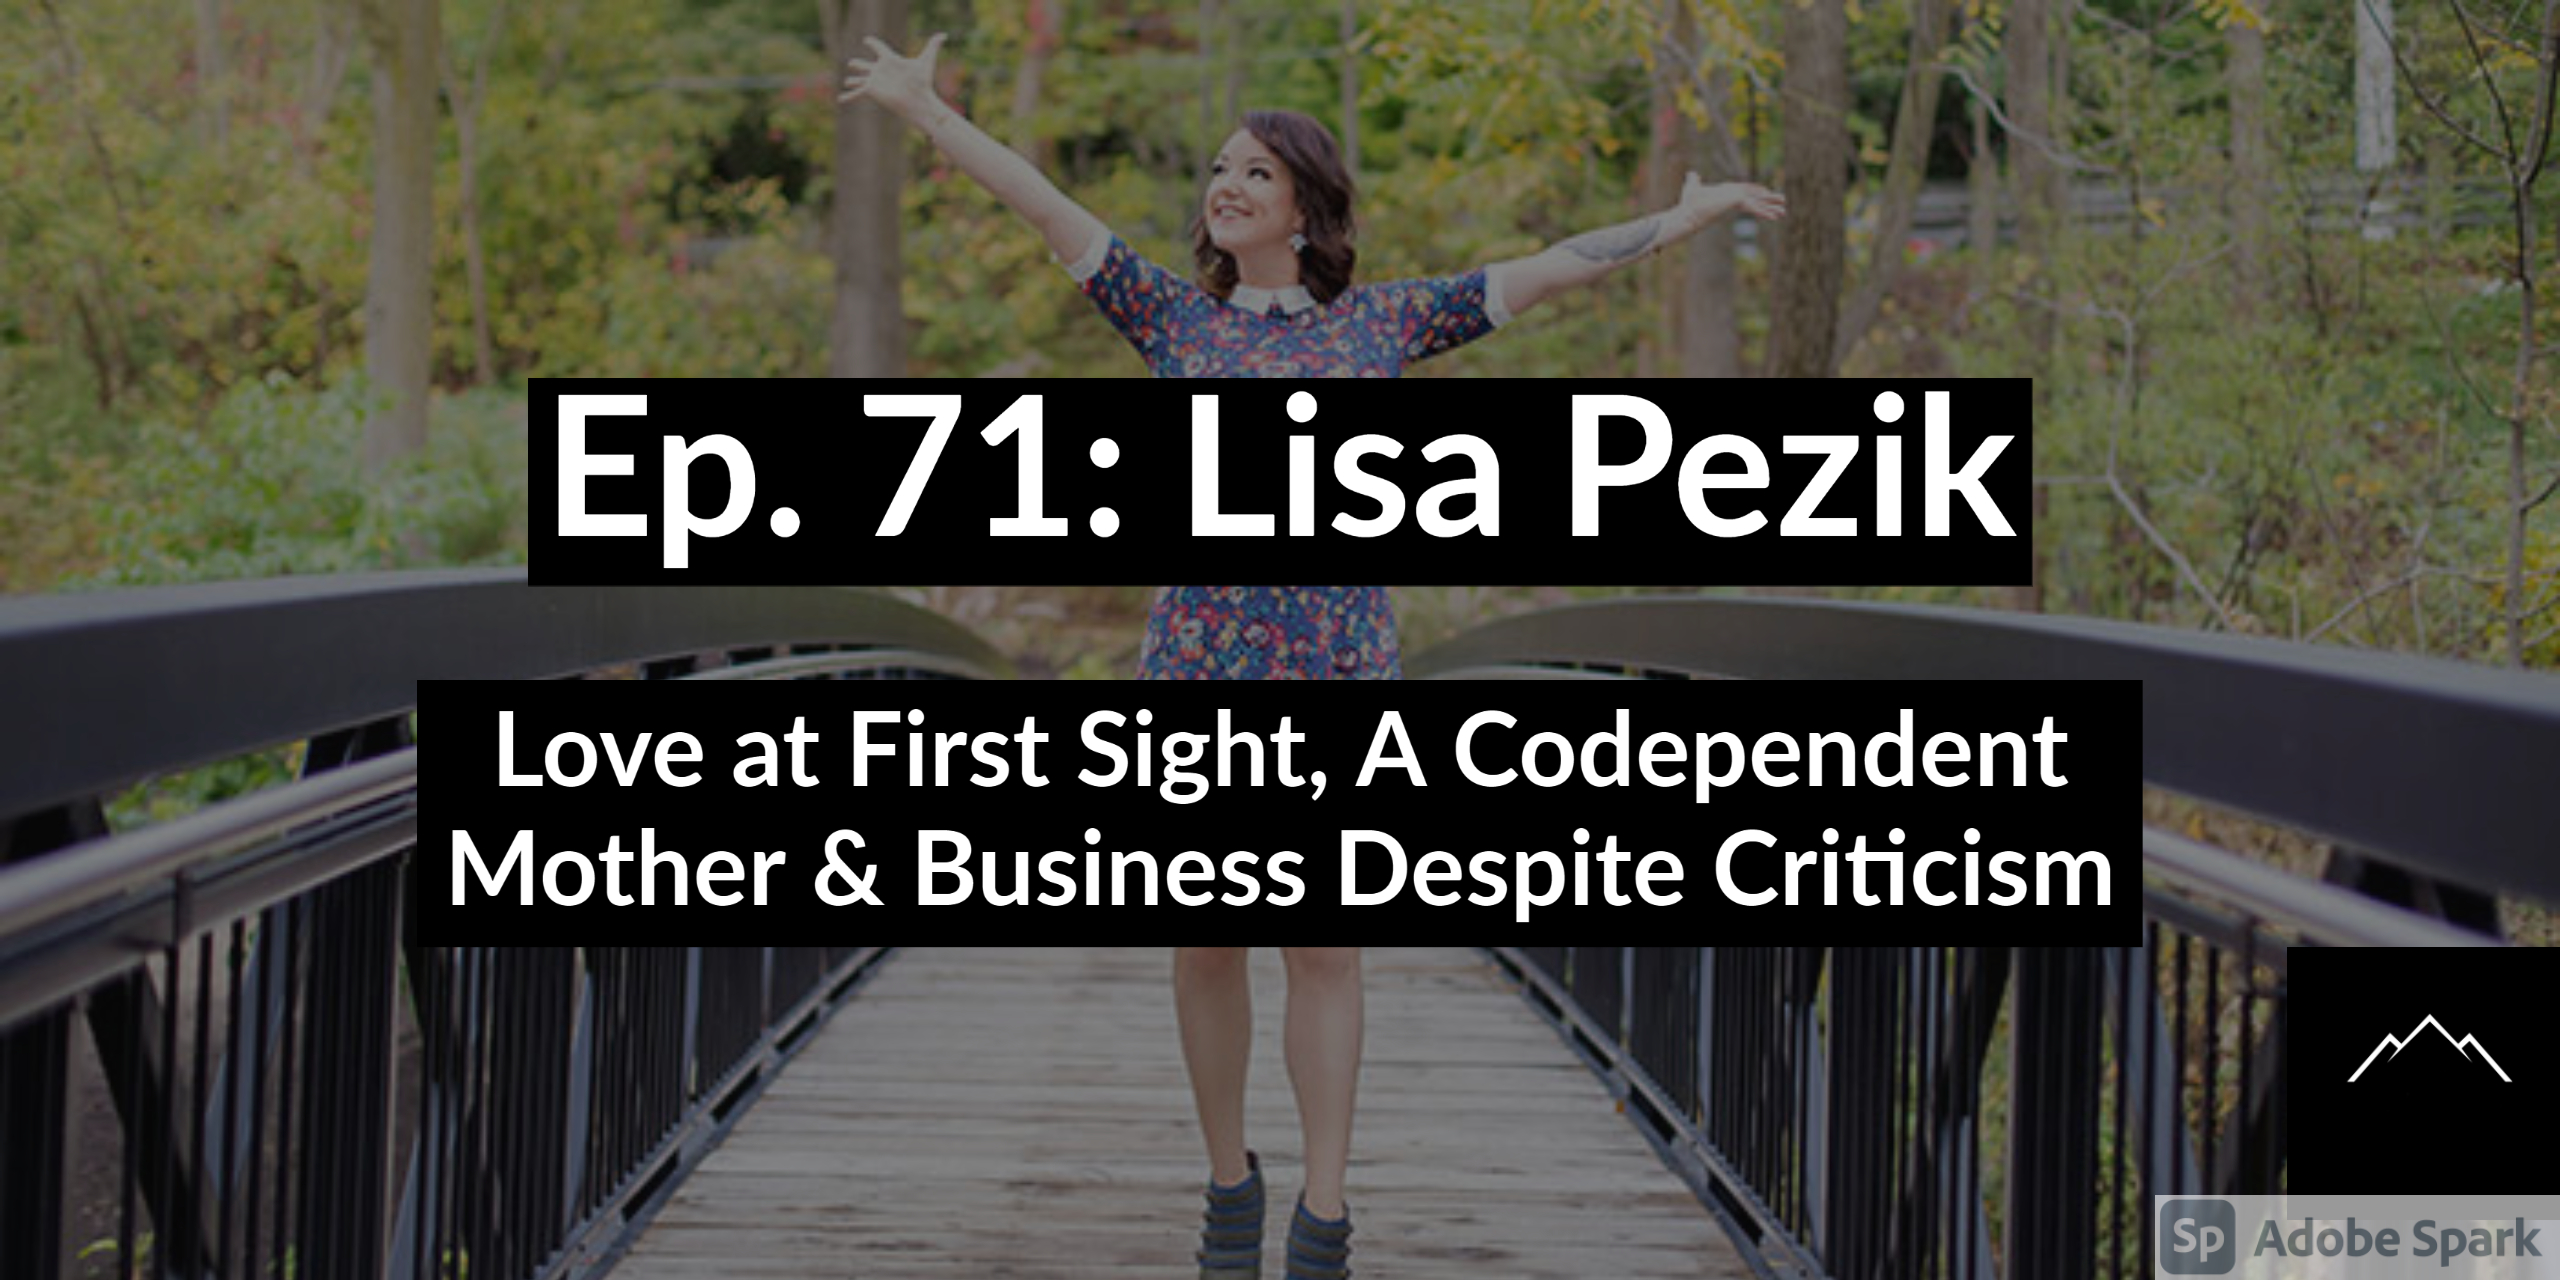 Lisa Pezik on The Hard Thing Podcast